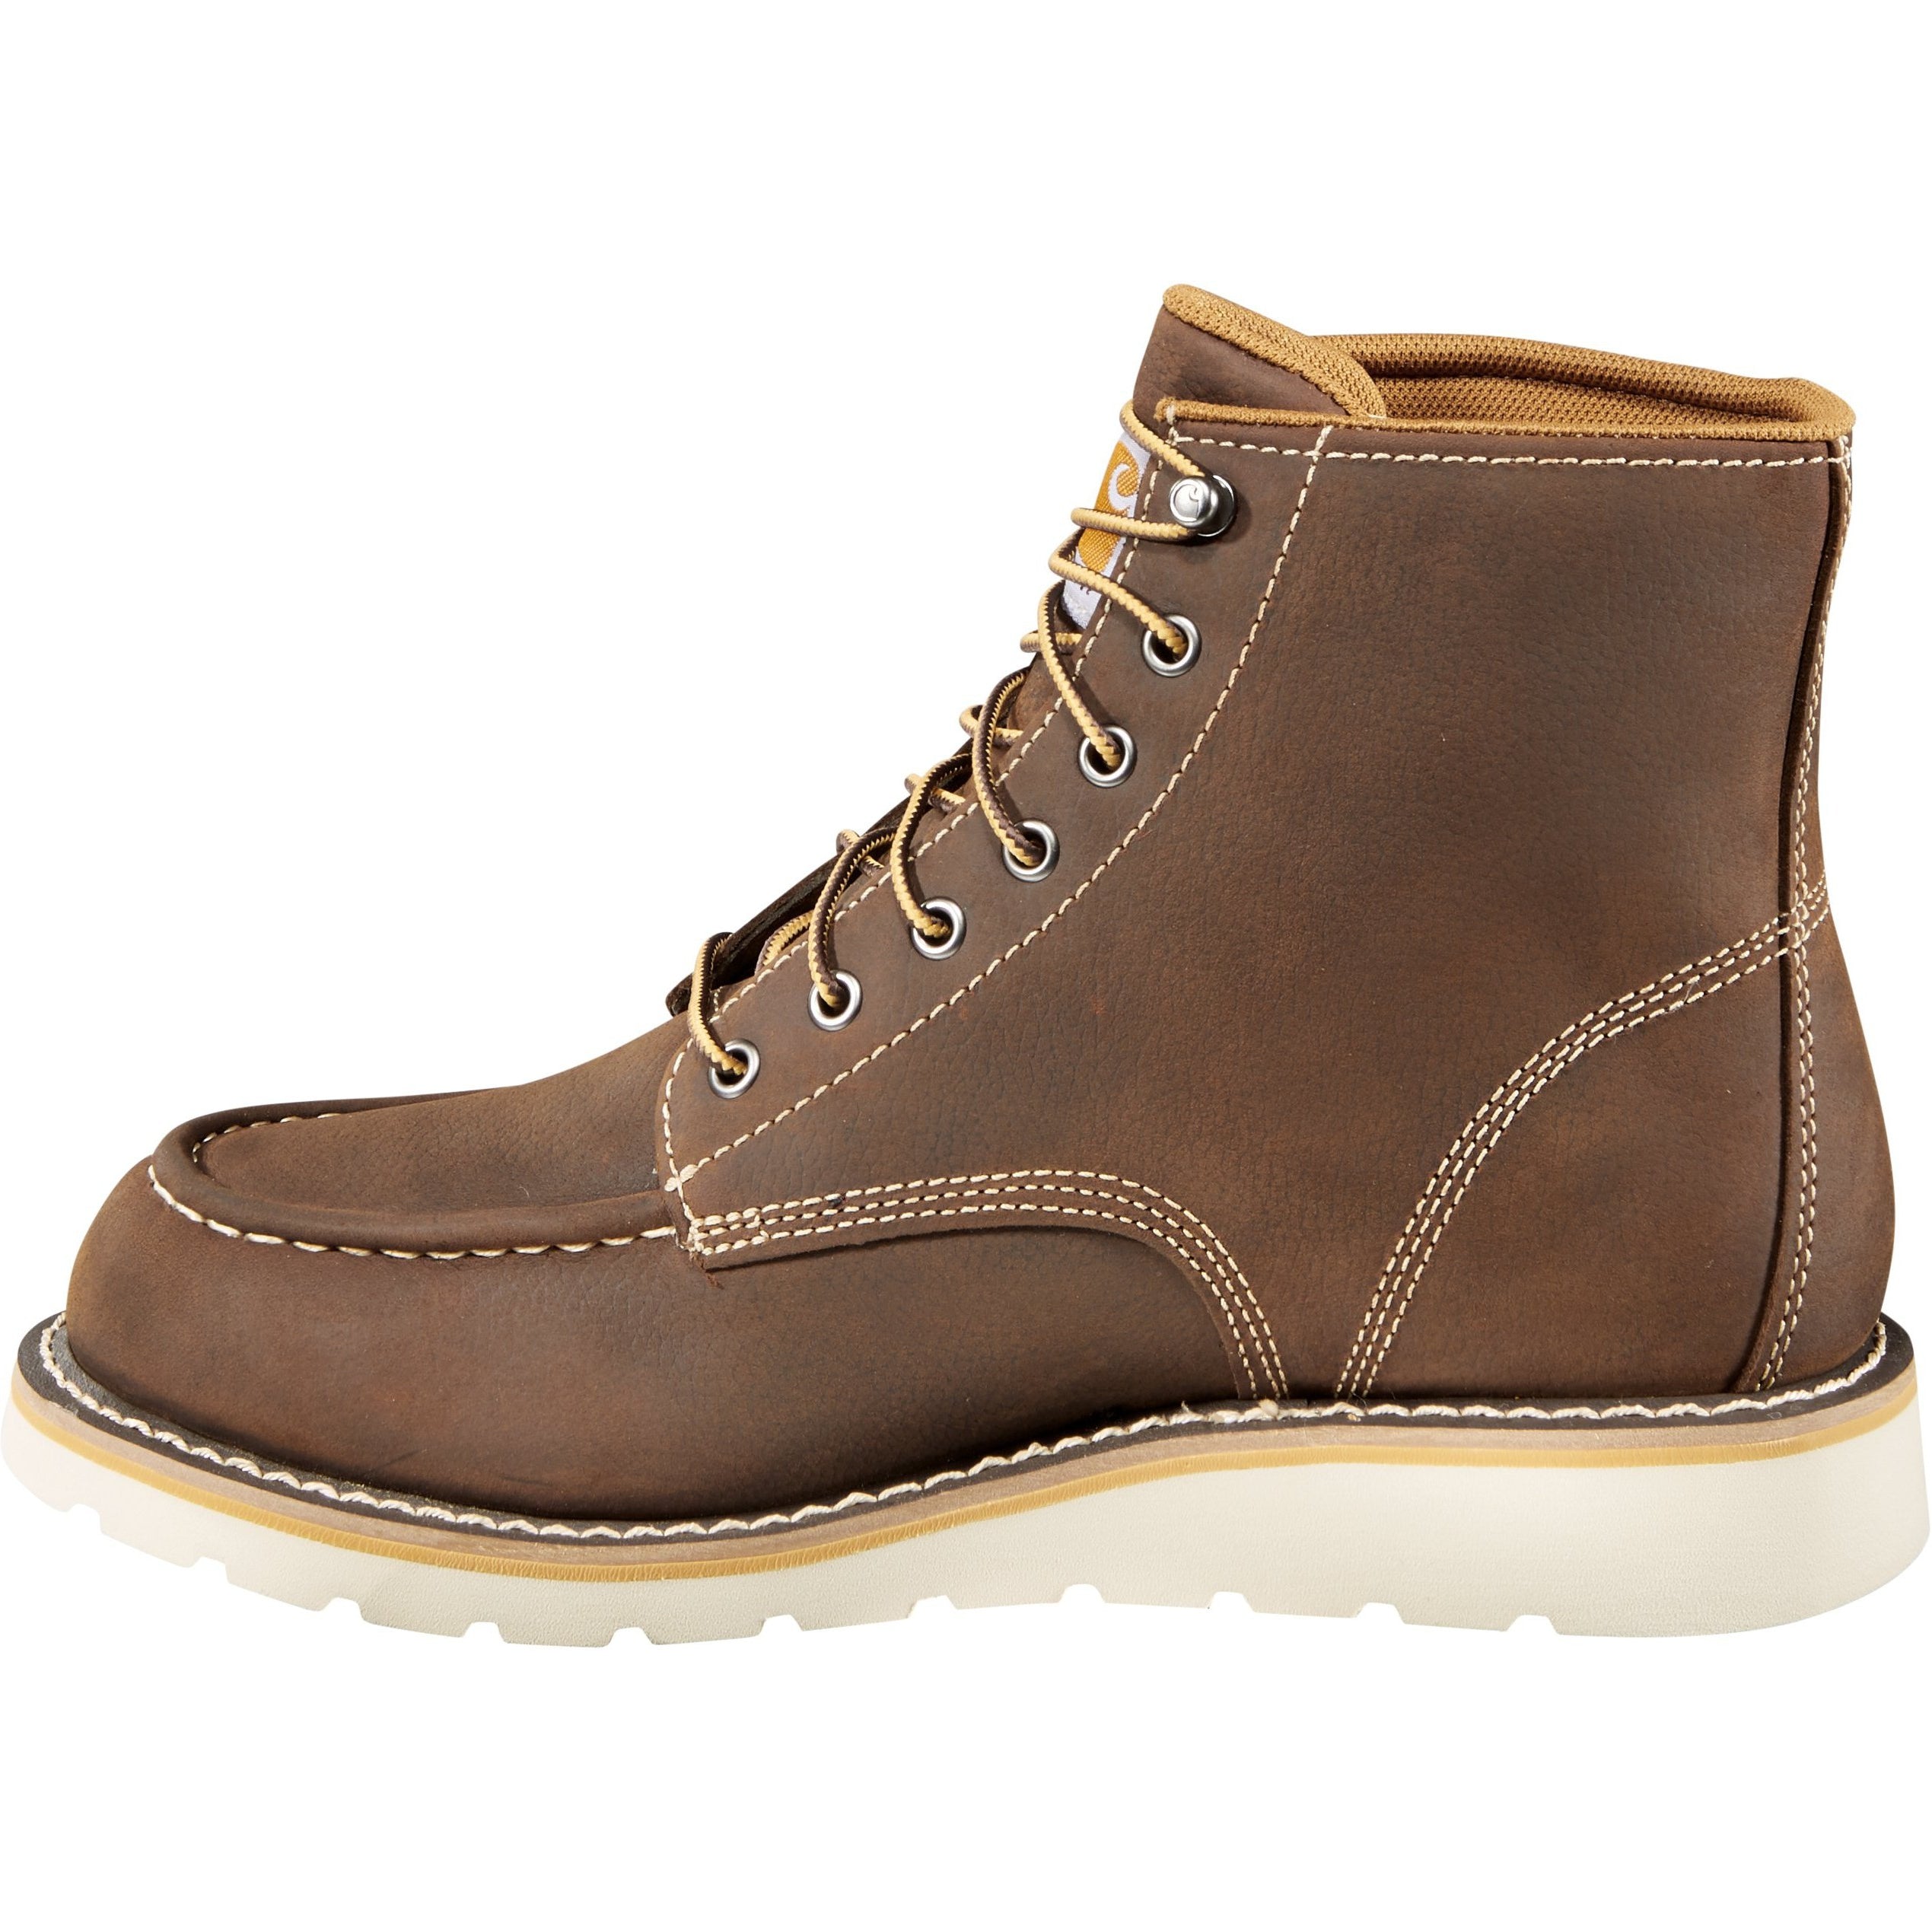 Carhartt Men's 6" Soft Toe Waterproof Wedge Work Boot Brown - CMW6095  - Overlook Boots